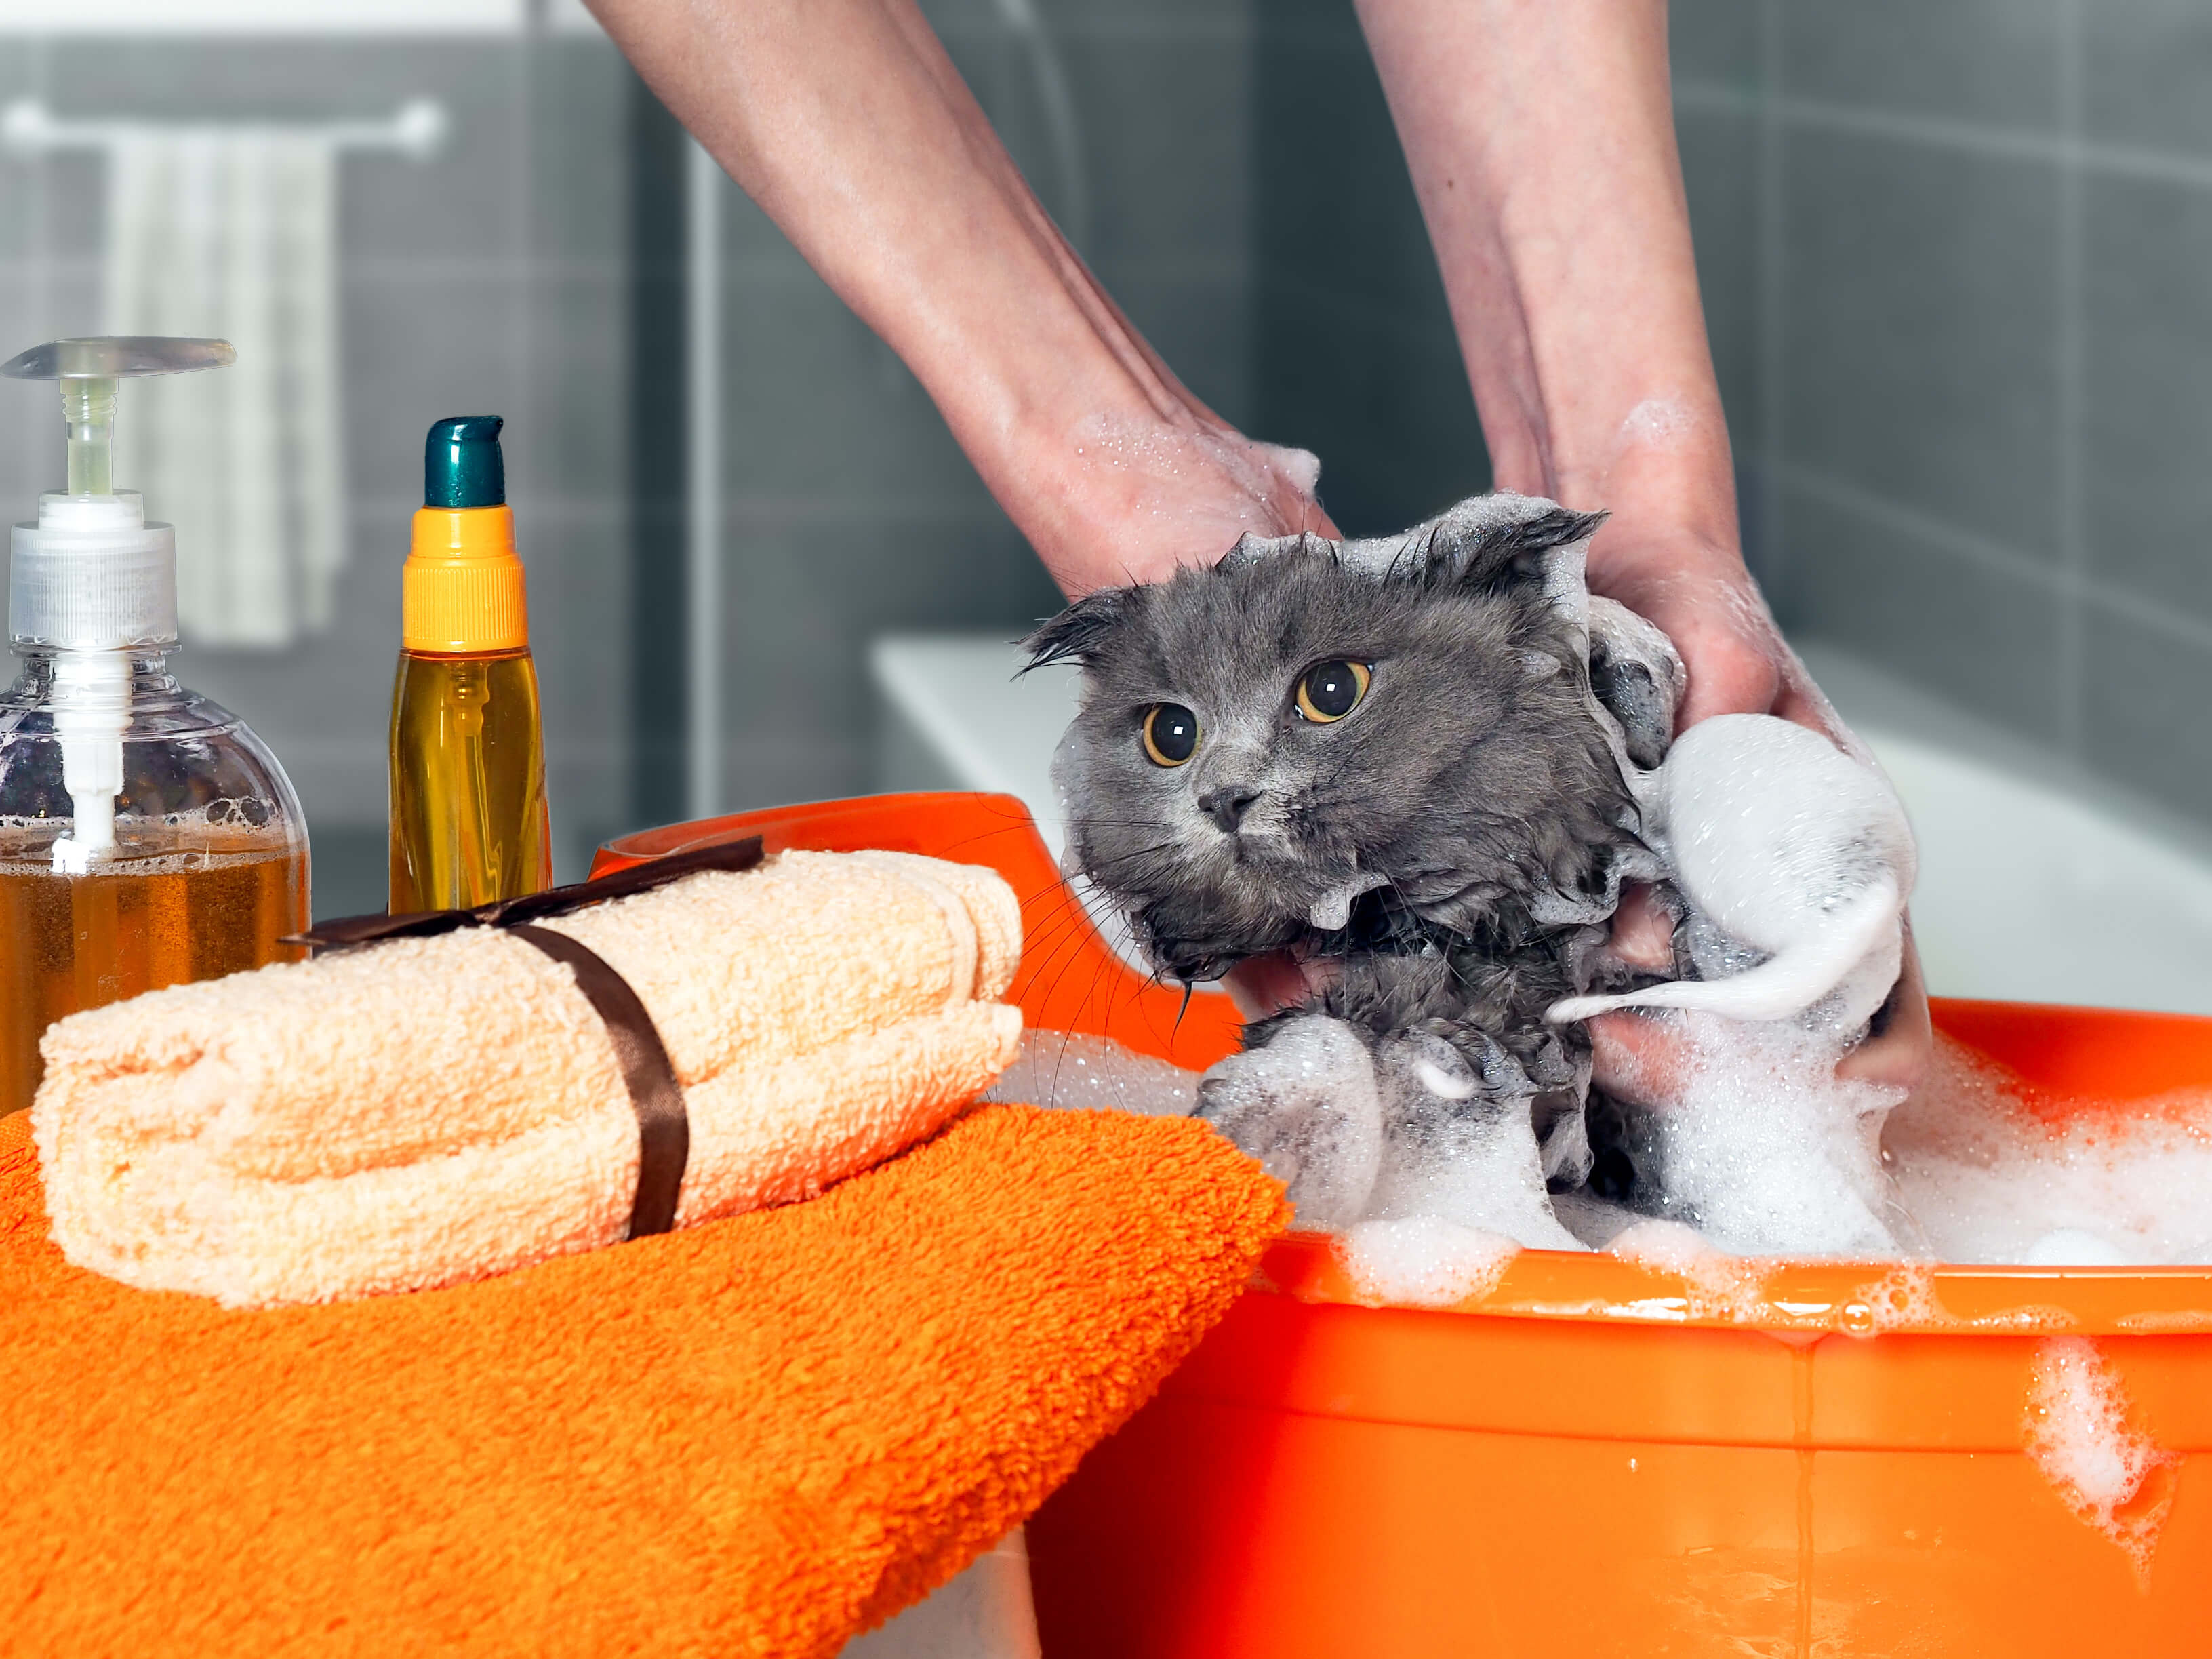 Моем кошку правильно. Мытье кошки. Кота моют. Ванная для мытья кота. Купание кошки.